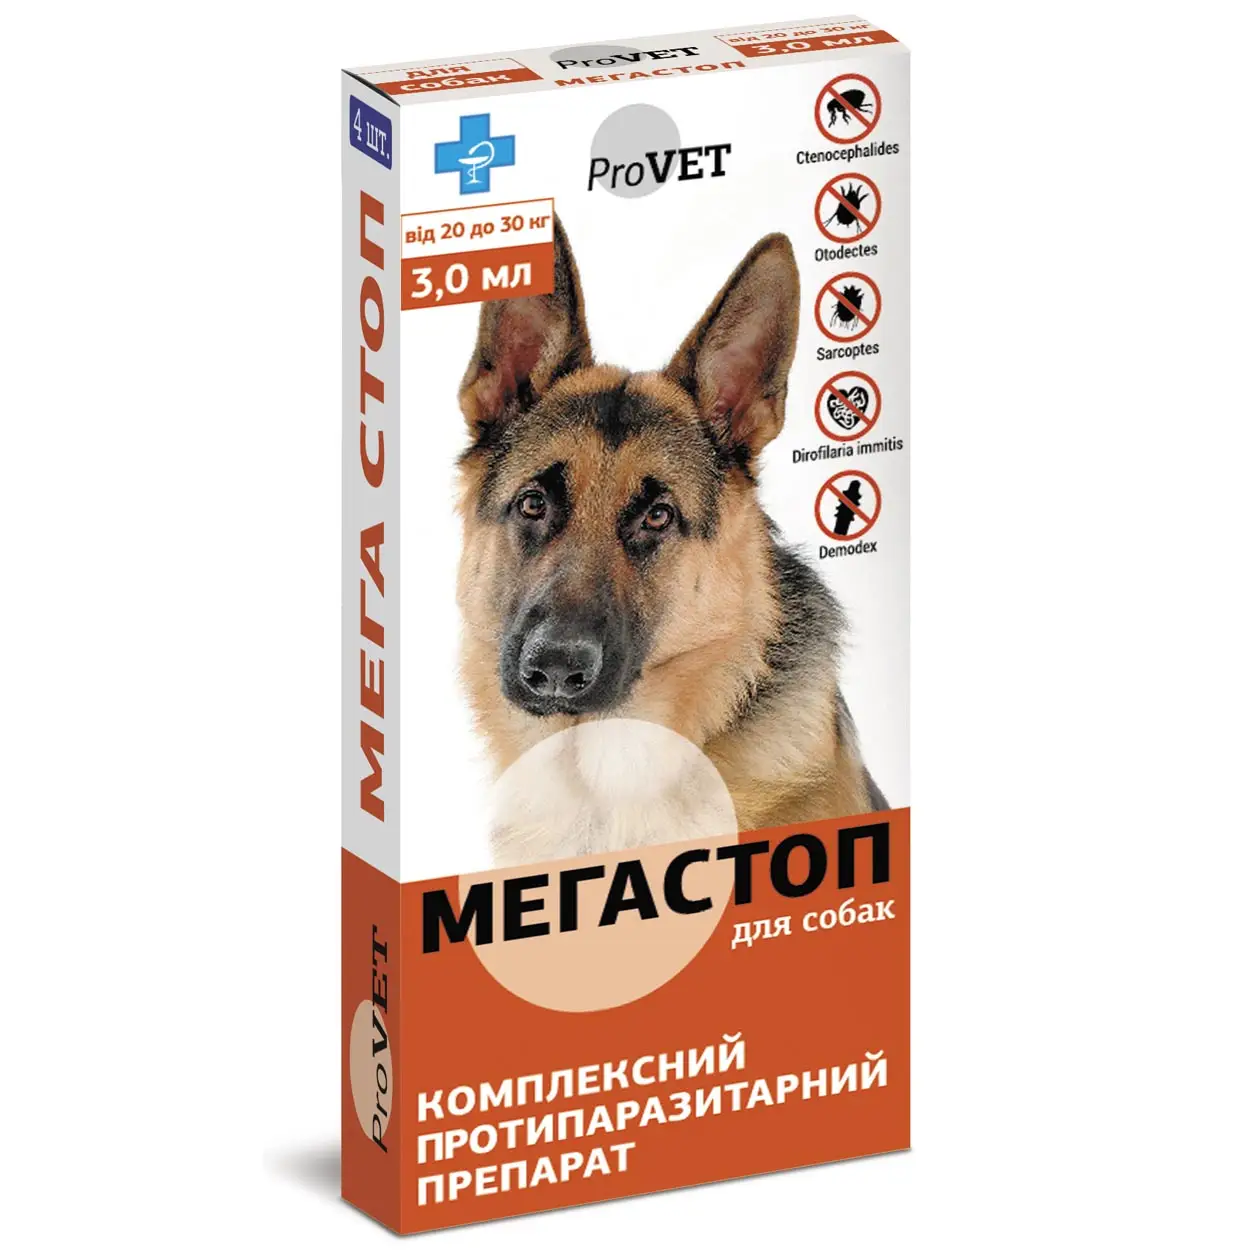 Капли на холку для собак Мега Стоп ProVET, от внешних и внутренних паразитов, от 20-30 кг, 12 мл (4 пипетки по 3 мл) (PR020078) - фото 1